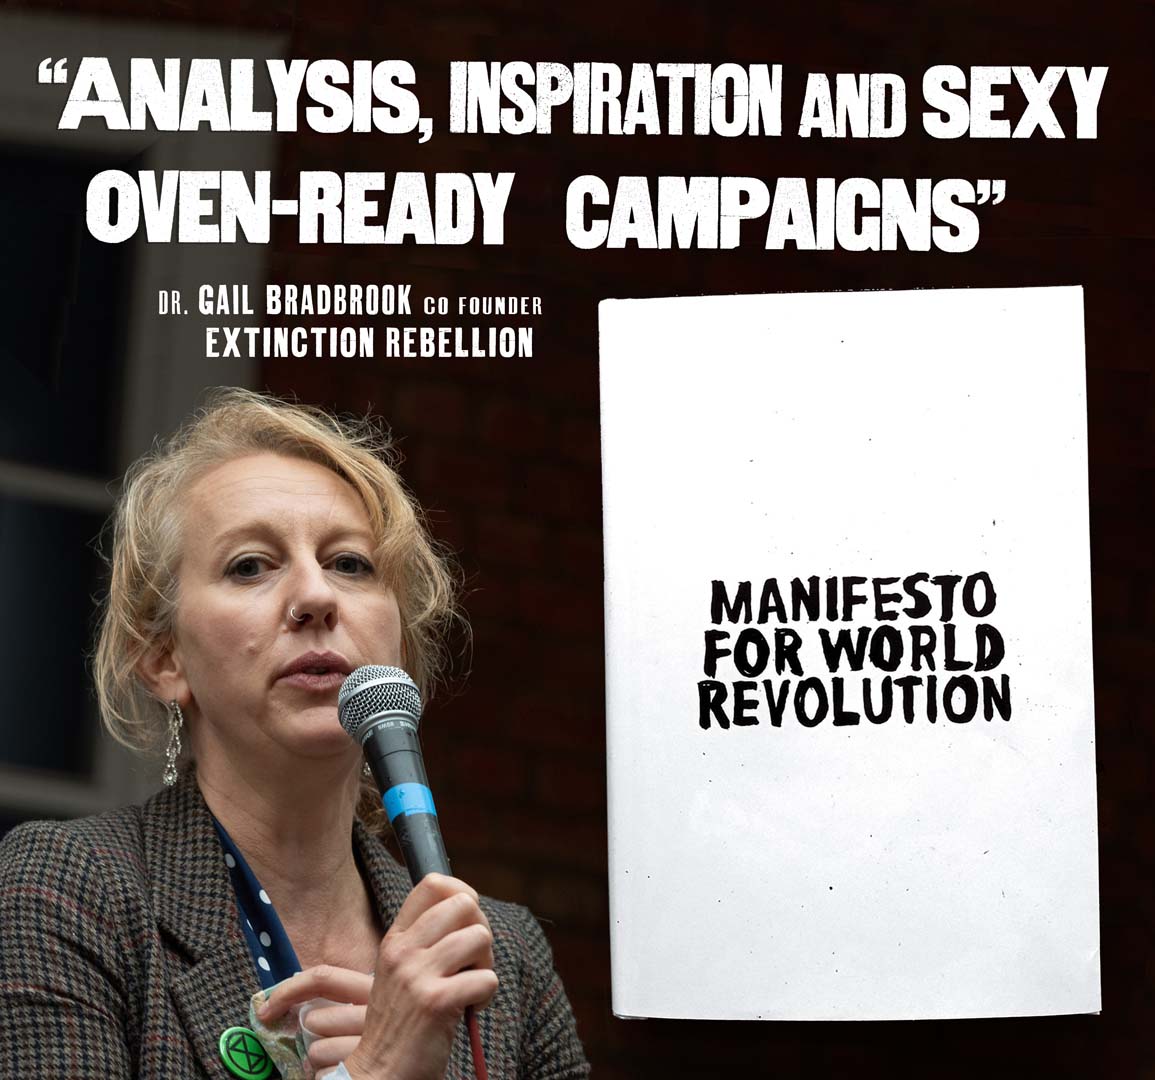 a manifesto for world revolution book open